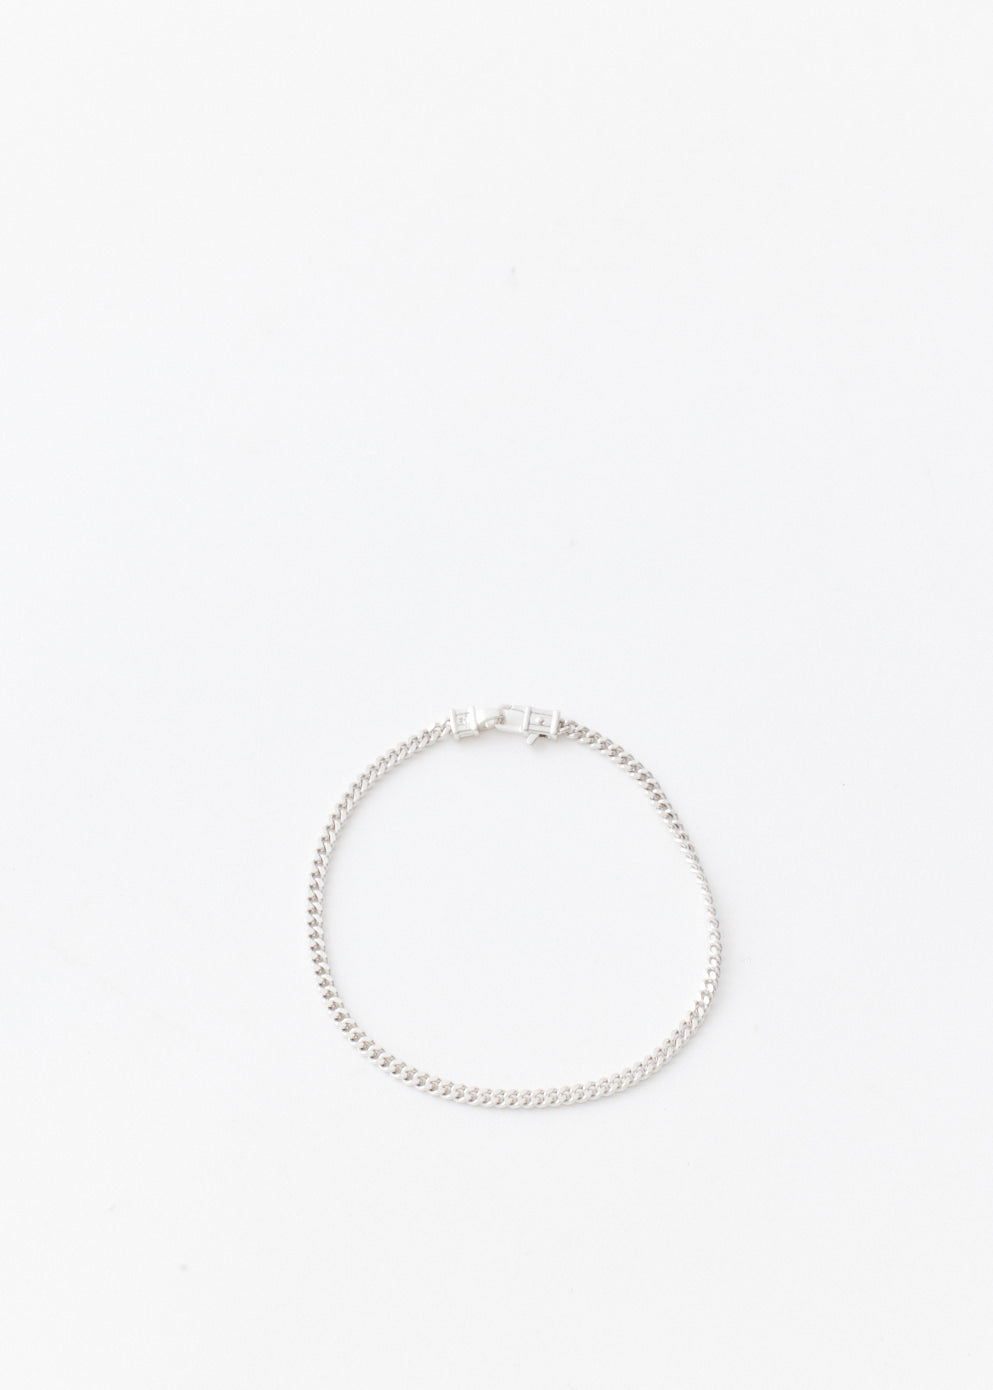 Curb Chain Bracelet 7.7"